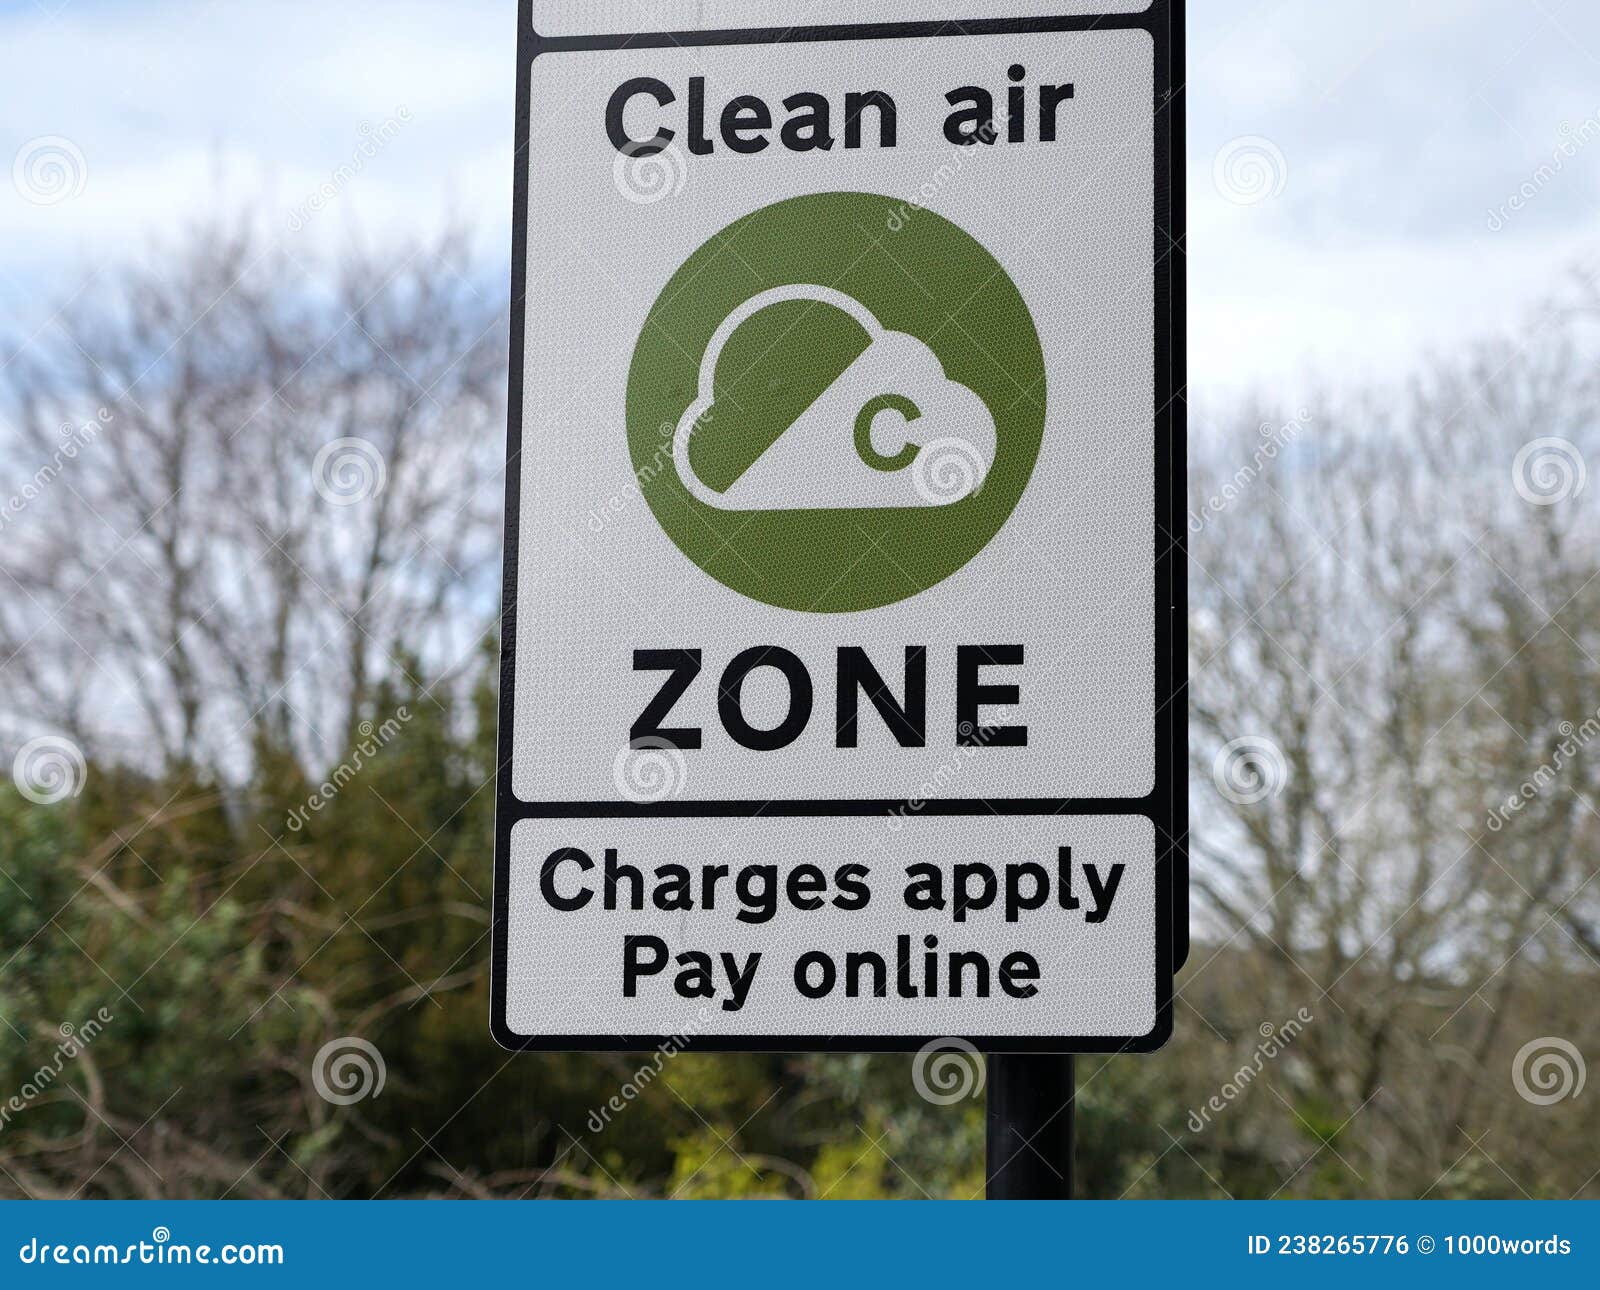 clean air zone sign